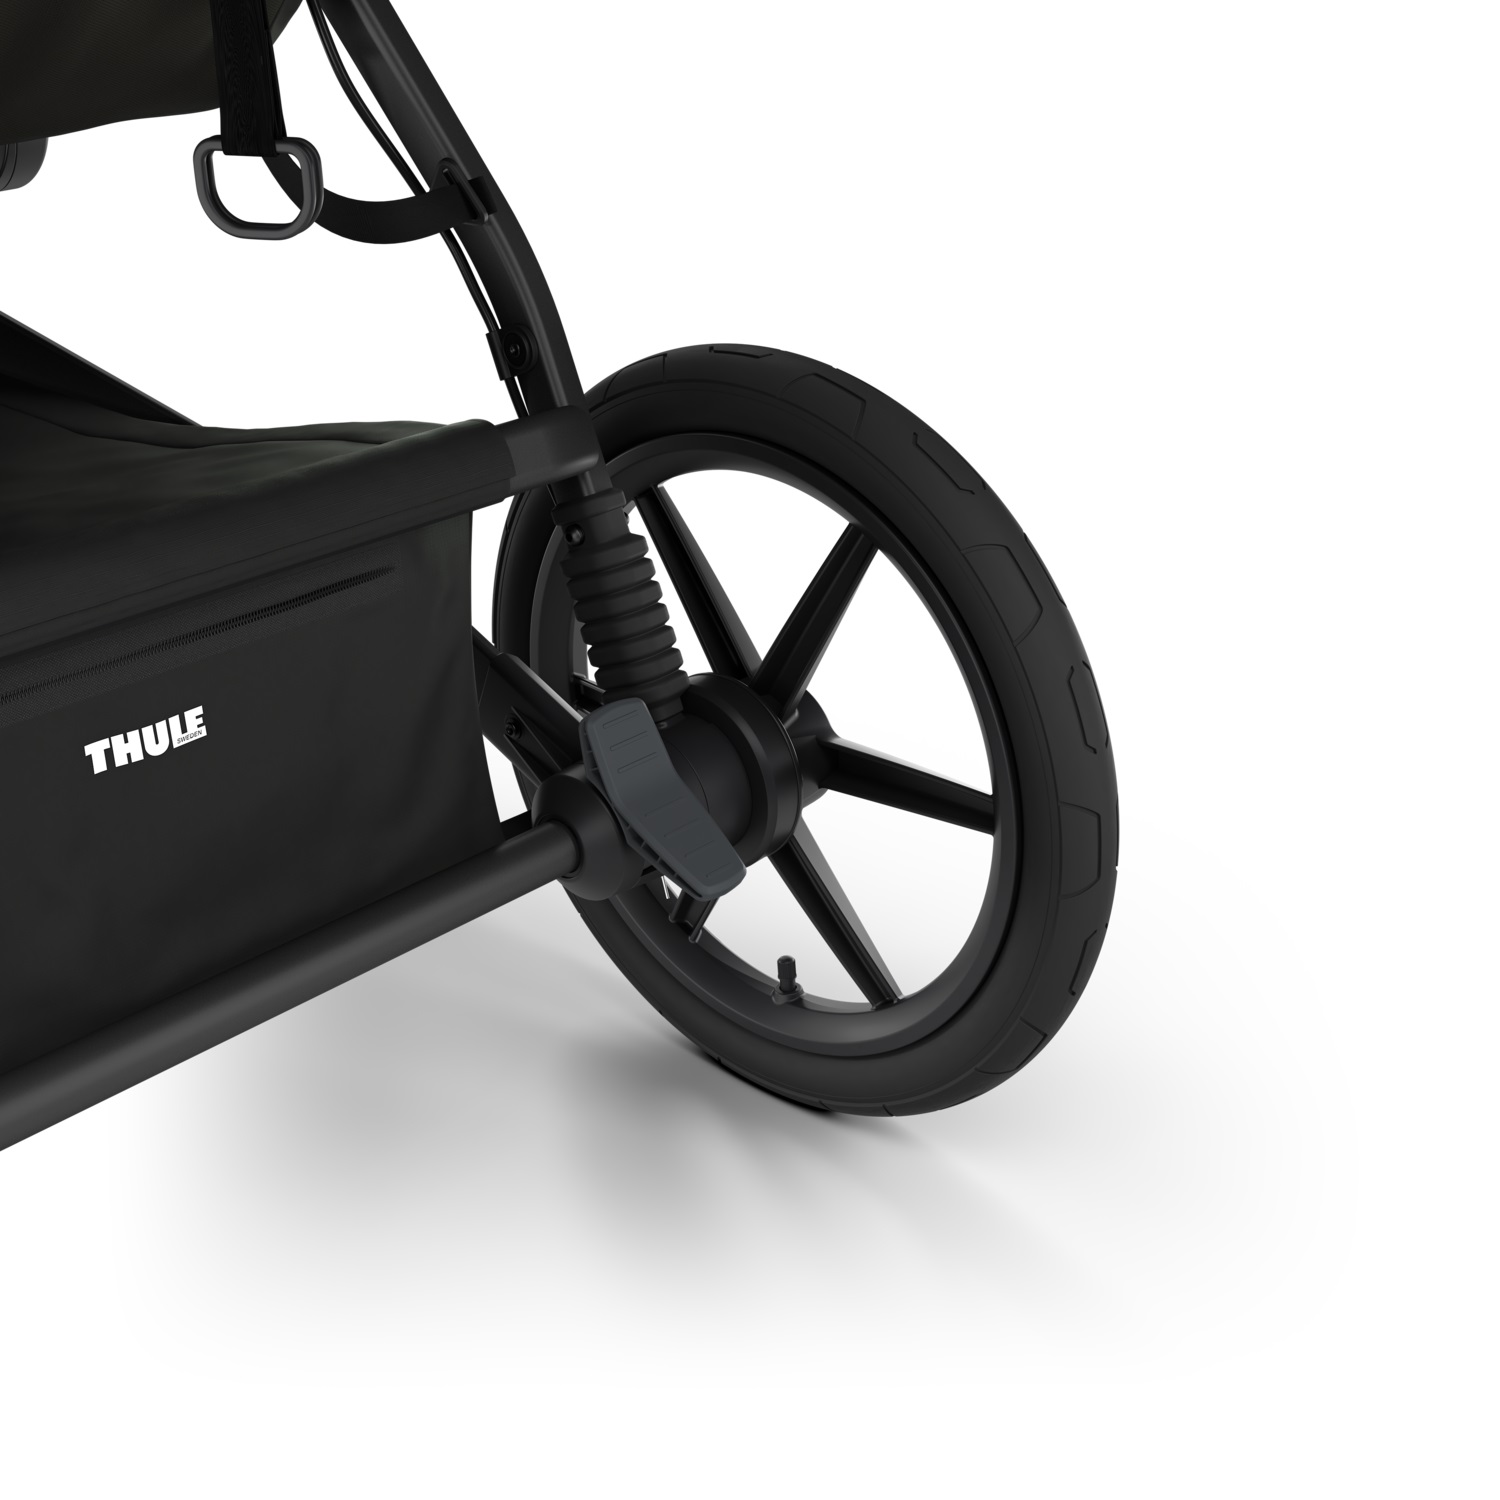 Thule Urban Glide (4 kotača) univerzalna kolica za sve terene bež boje